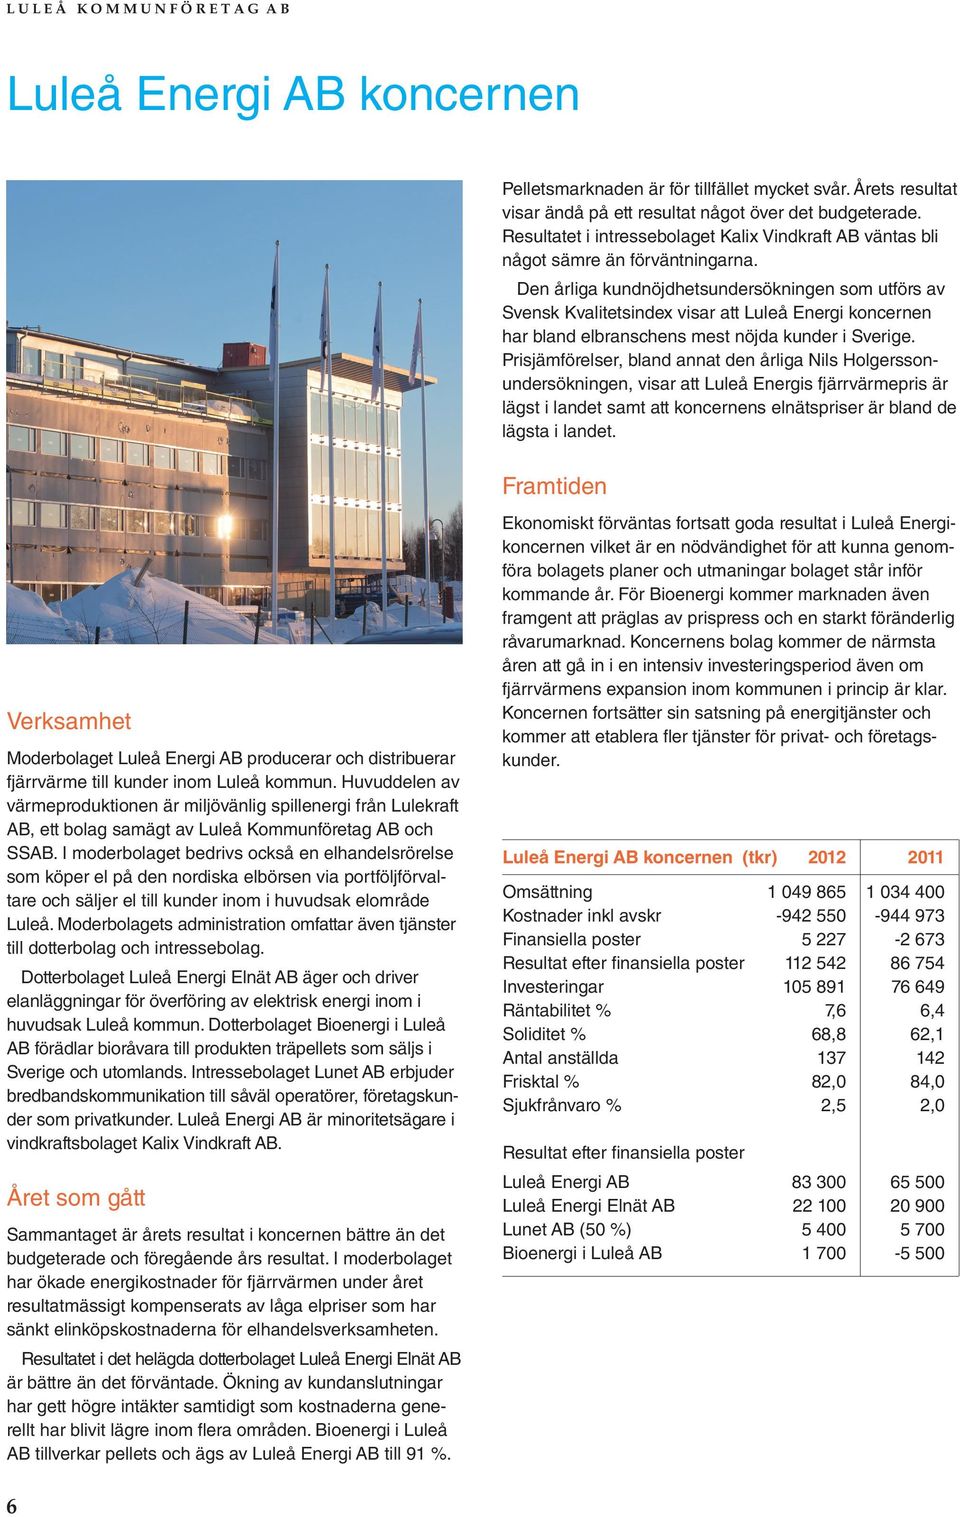 Den årliga kundnöjdhetsundersökningen som utförs av Svensk Kvalitetsindex visar att Luleå Energi koncernen har bland elbranschens mest nöjda kunder i Sverige.